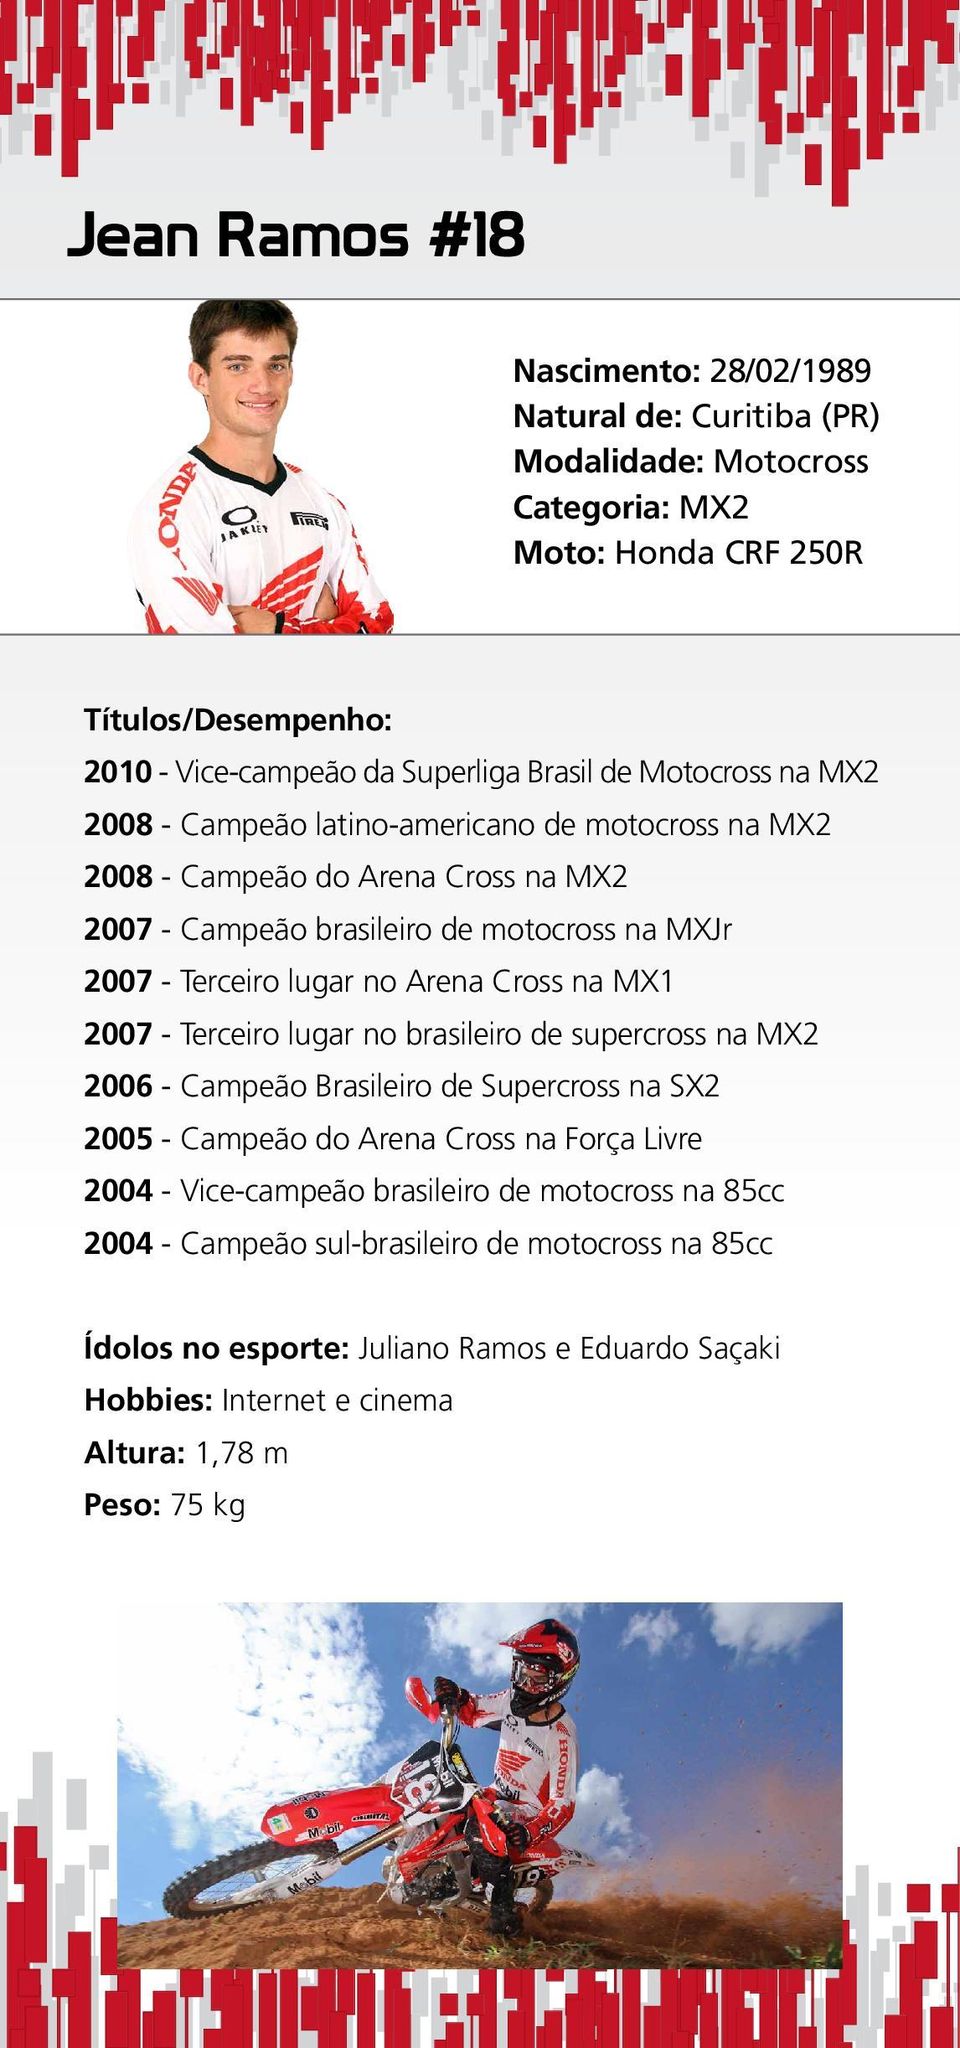 Cross na MX1 2007 - Terceiro lugar no brasileiro de supercross na MX2 2006 - Campeão Brasileiro de Supercross na SX2 2005 - Campeão do Arena Cross na Força Livre 2004 - Vice-campeão